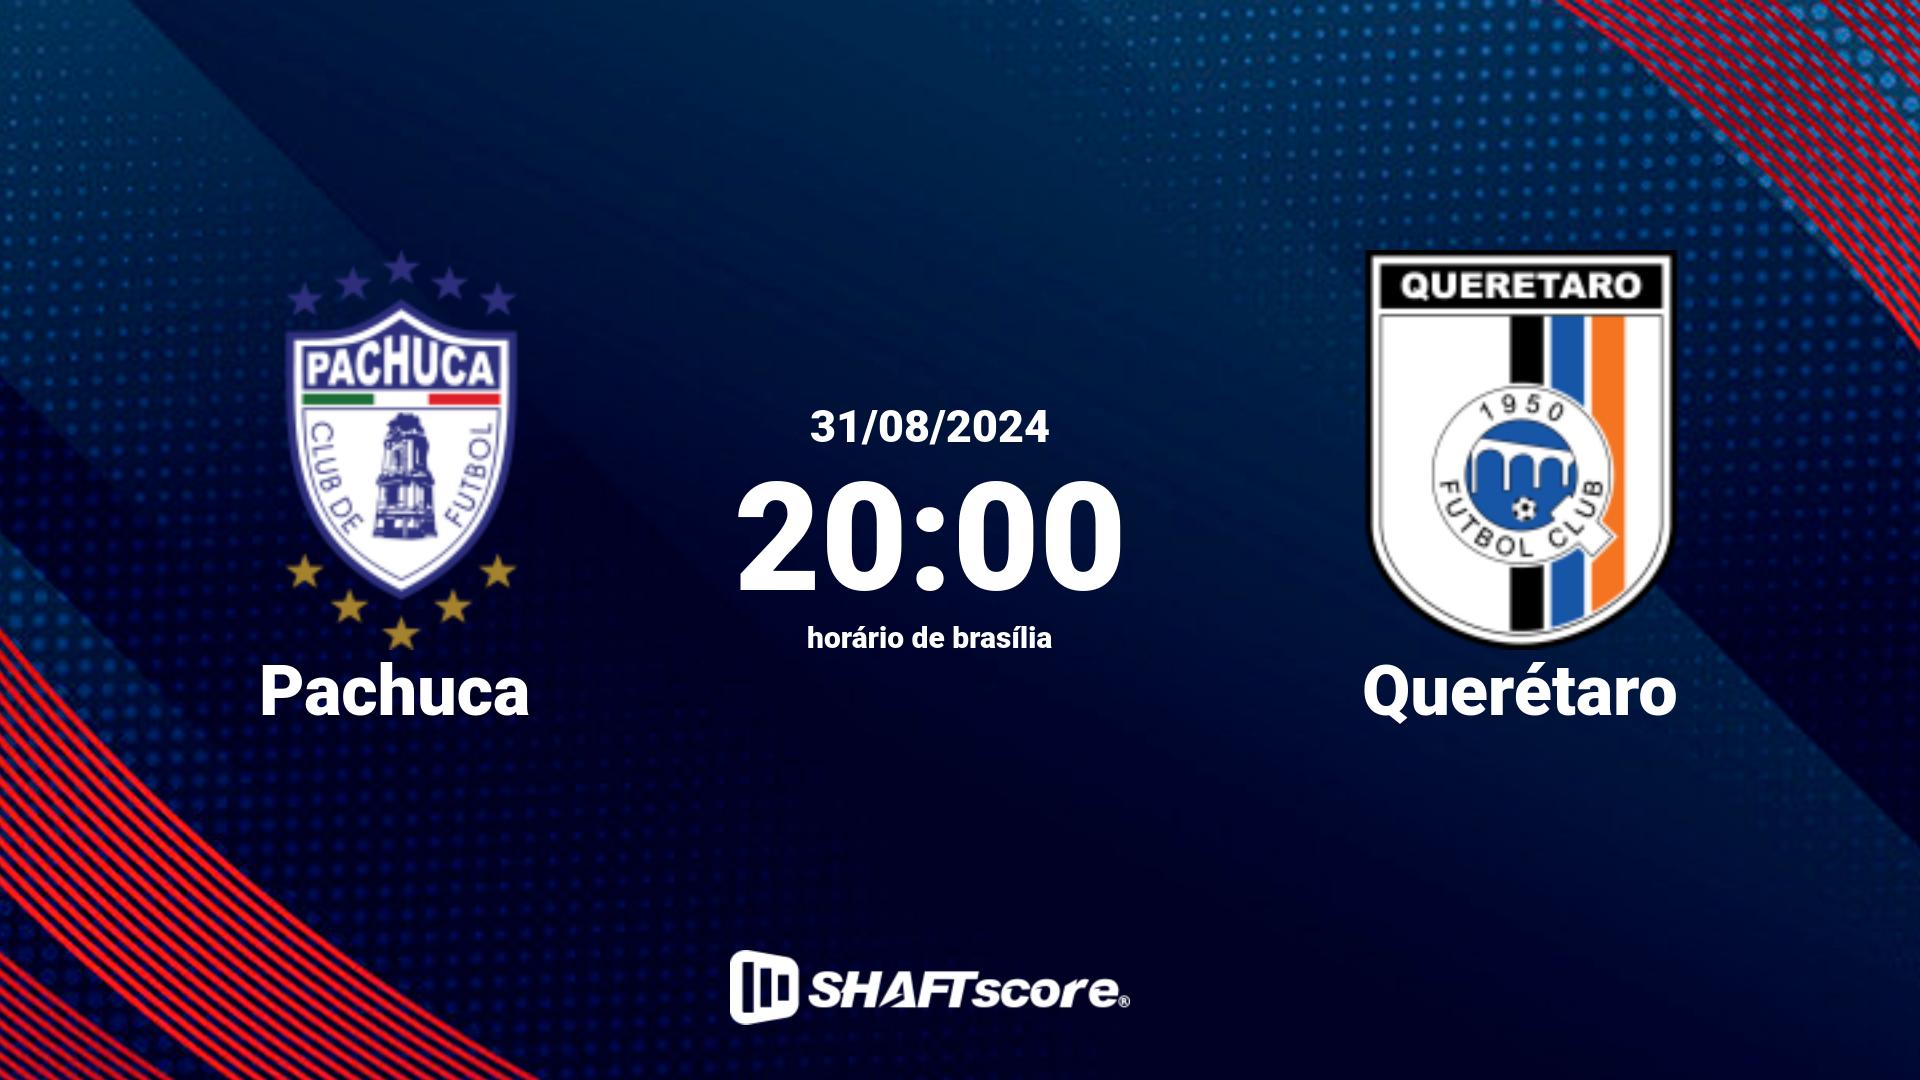 Estatísticas do jogo Pachuca vs Querétaro 31.08 20:00